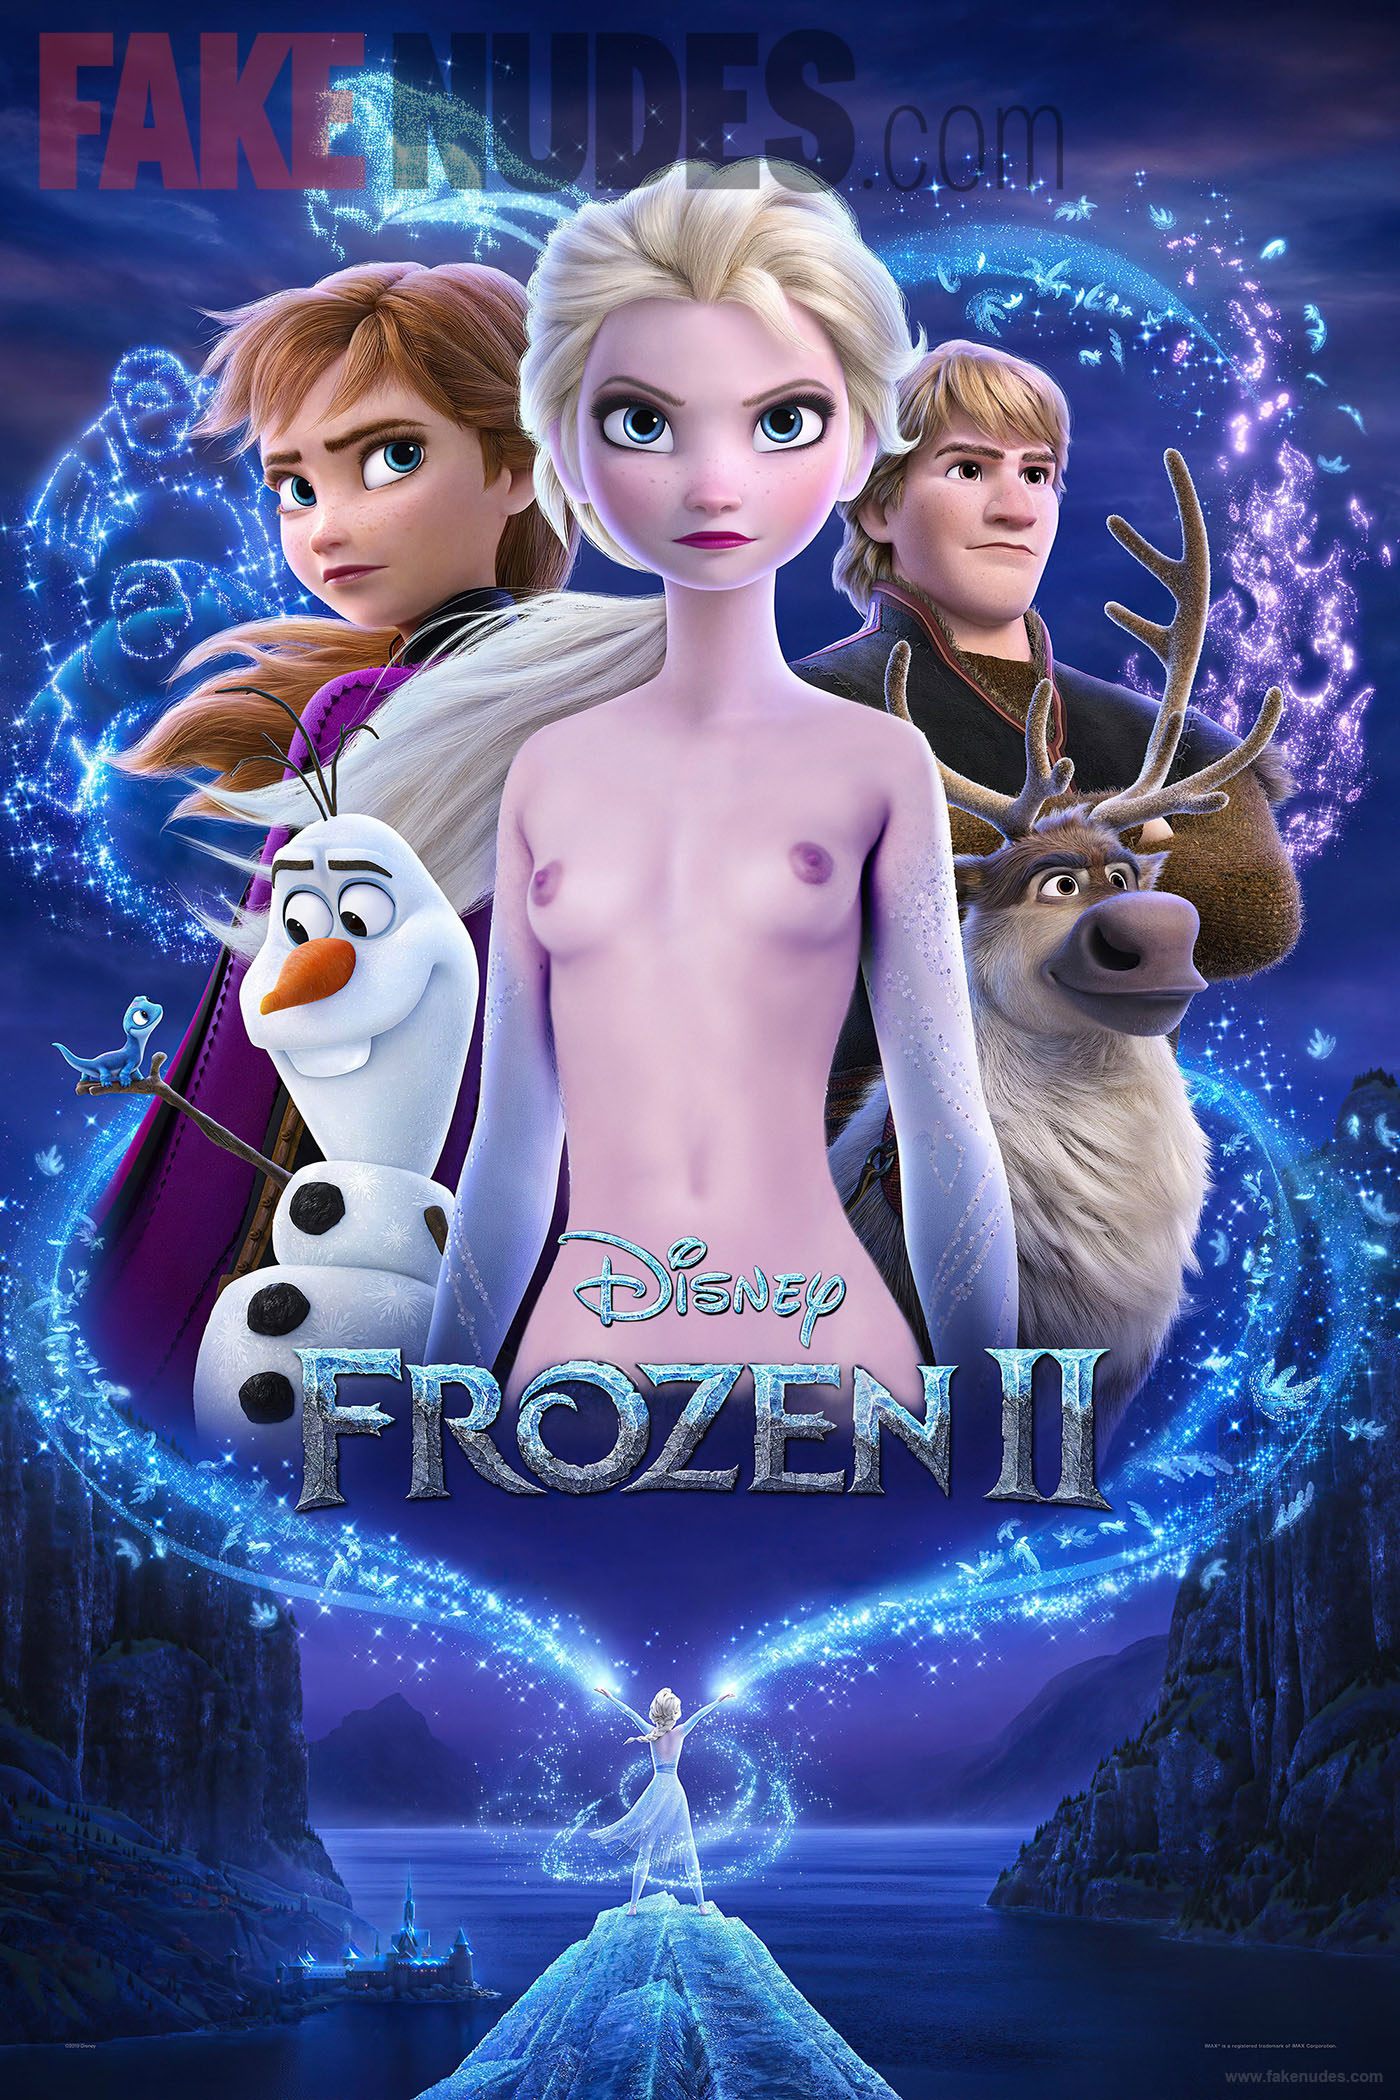 Frozen 2 Trailer Has Fans Convinced That Elsa Is An Exhibitionist -  FakeNudes.com